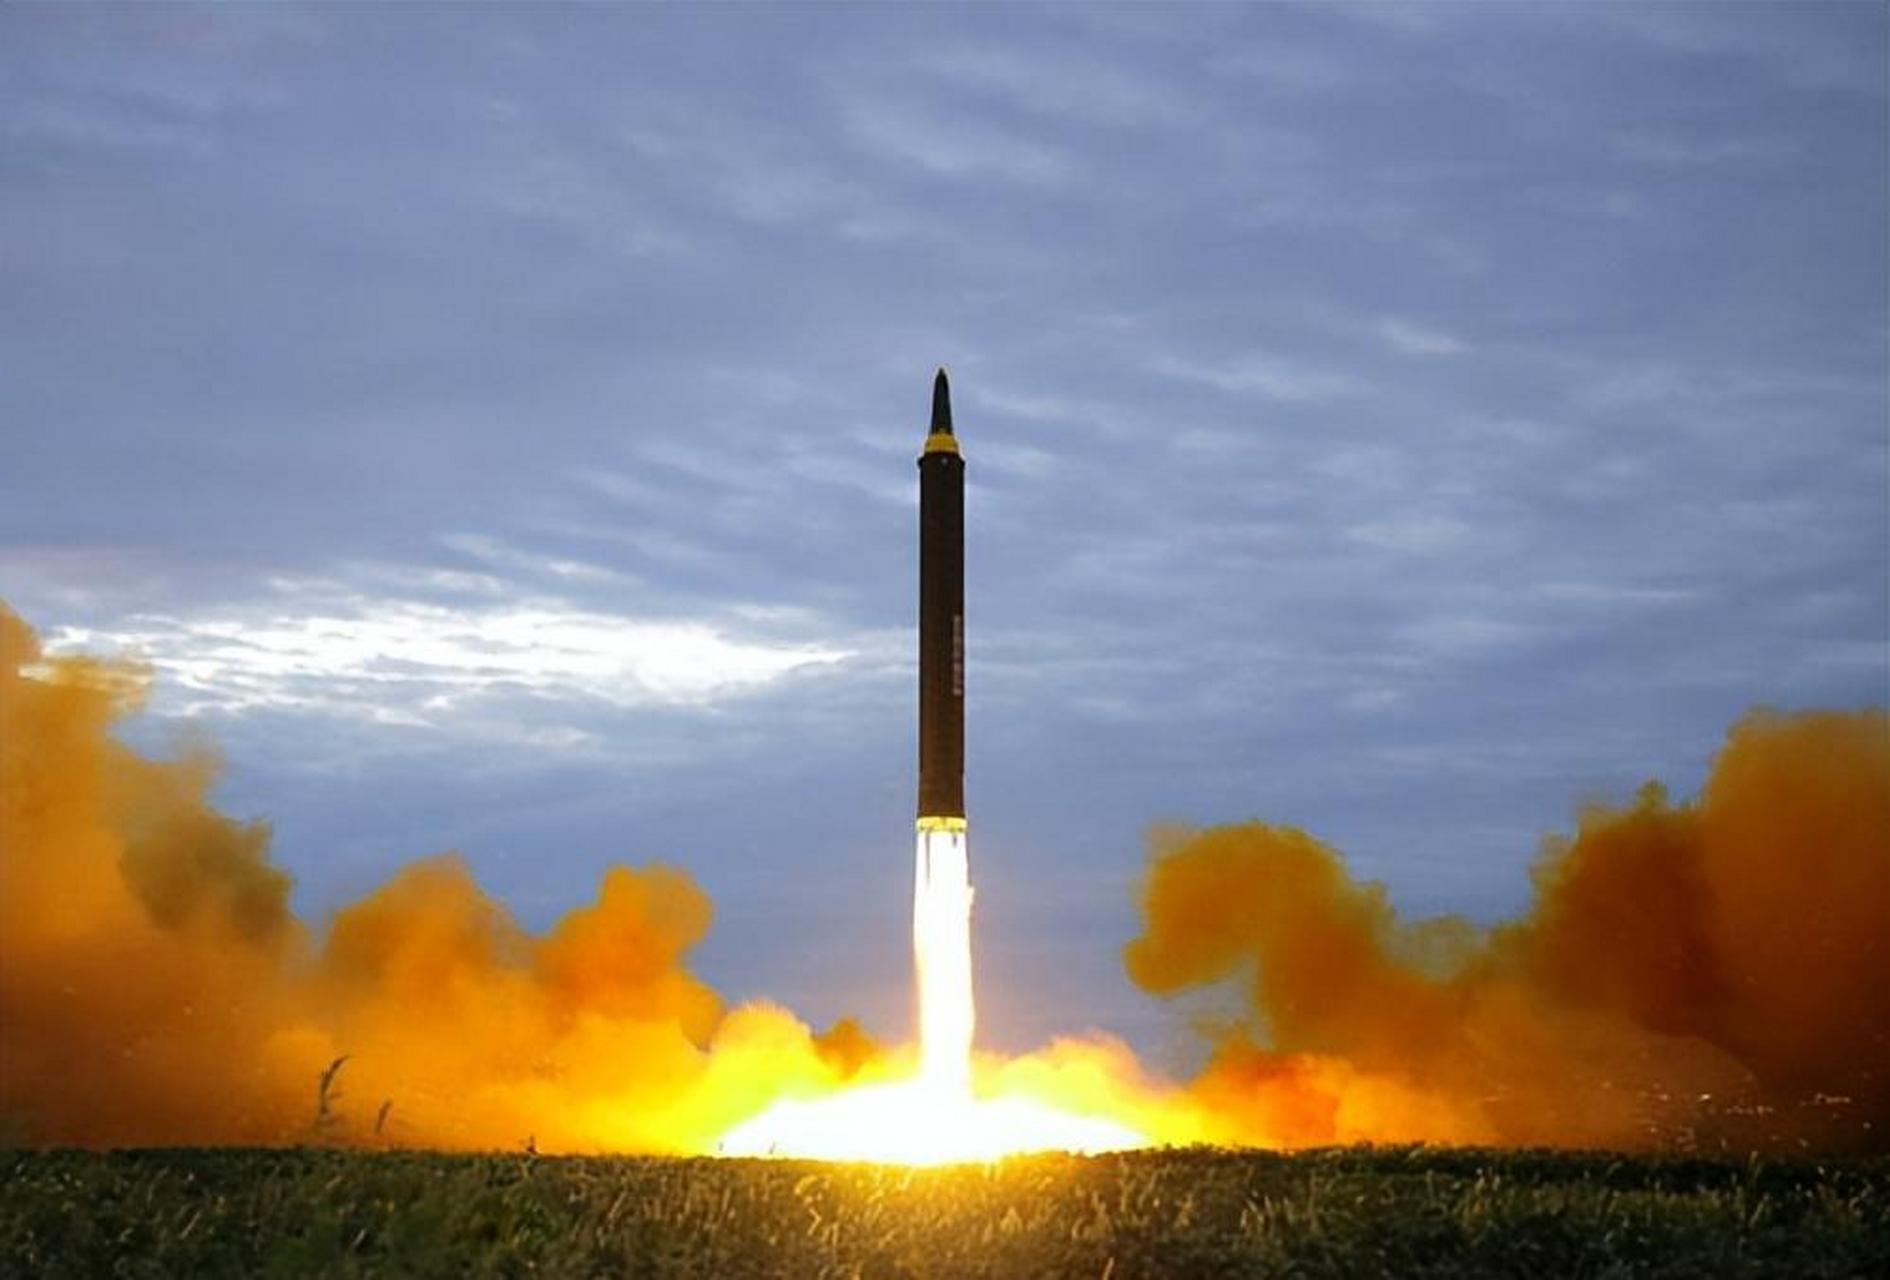 朝鲜高超音速导弹分析图片